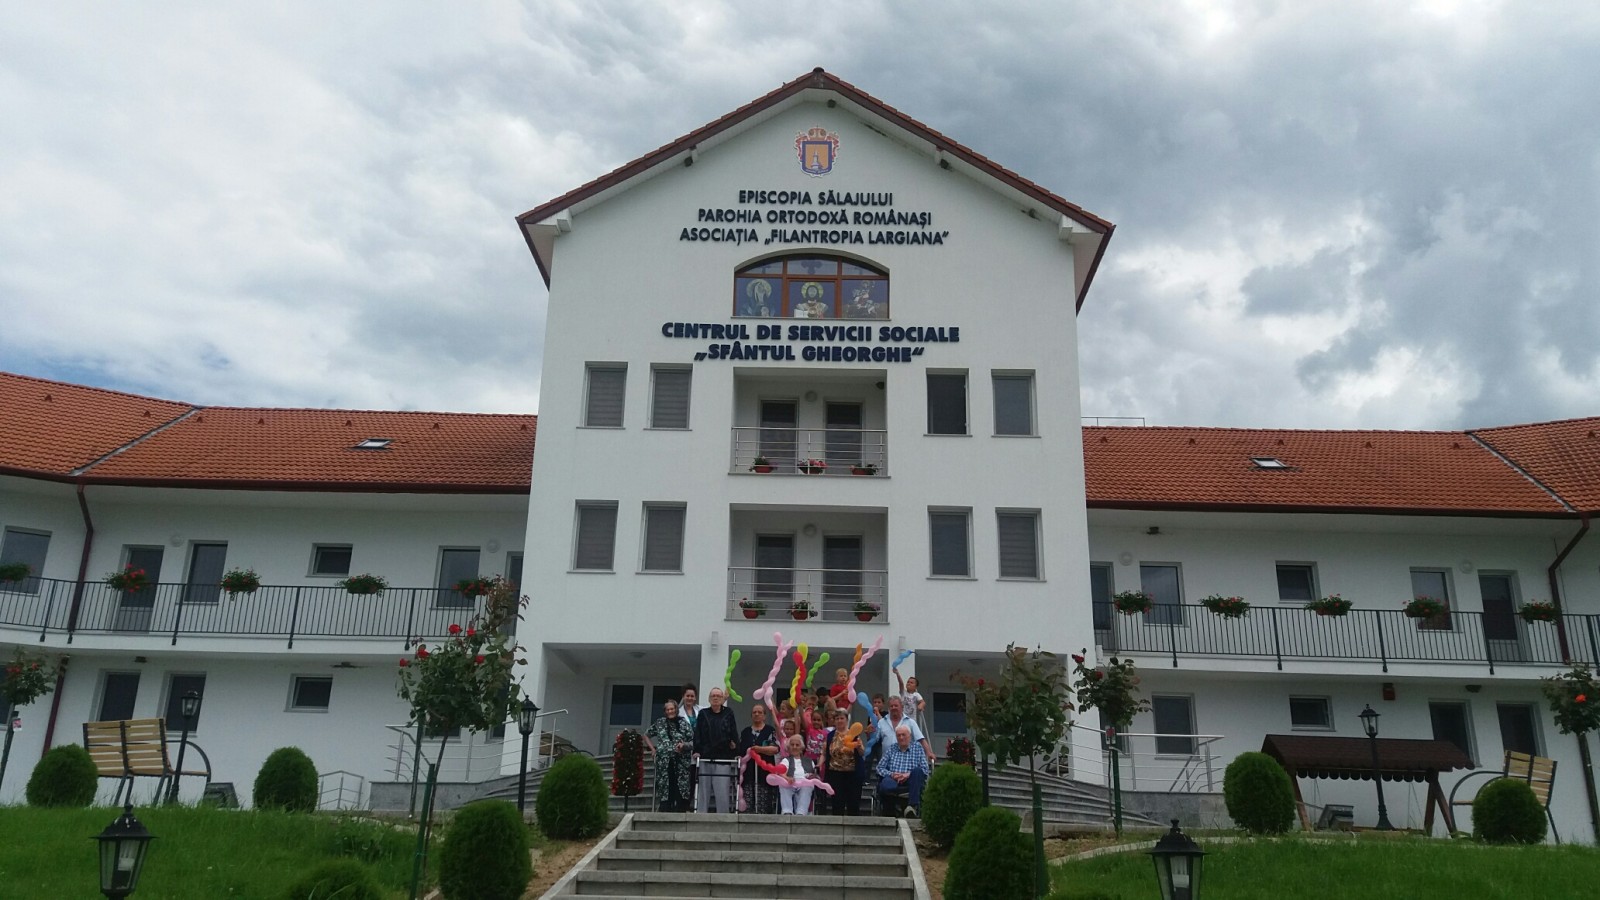 Ziua de 1 Iunie, la Centrul de Servicii Sociale din Românași